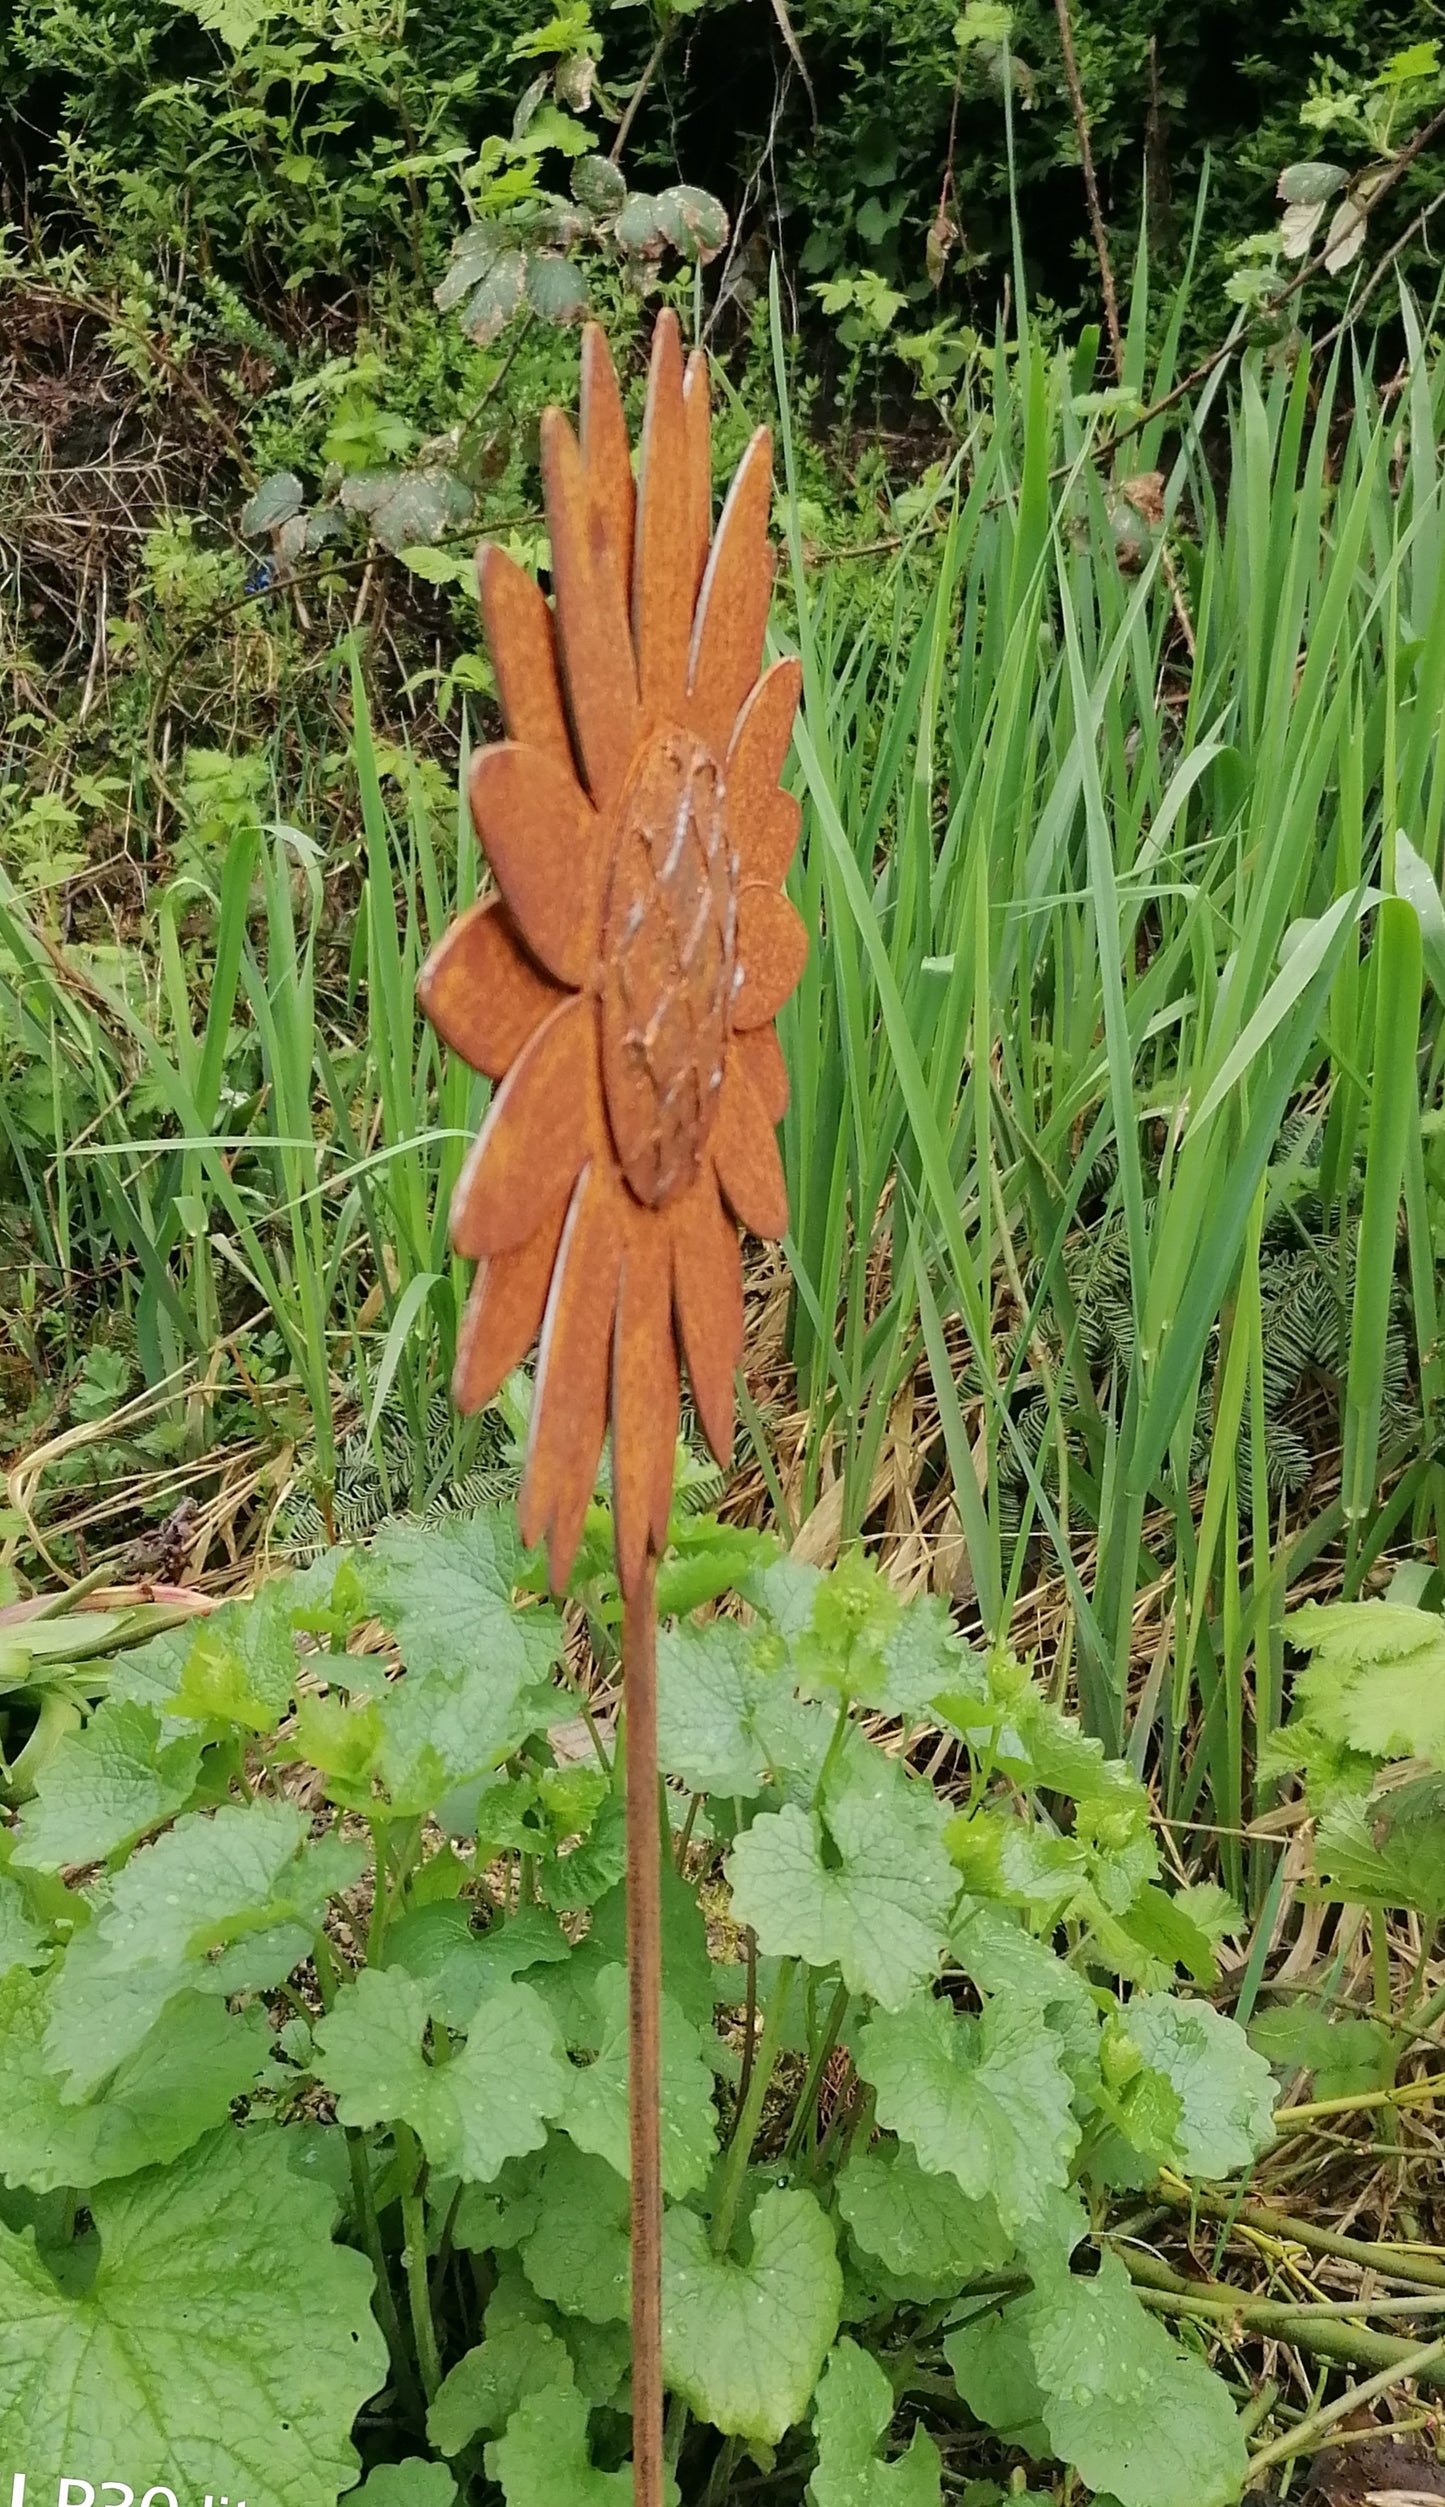 NEU !! Gartenstecker Sonnenblume 135 cm lang aus Metall in Edelrost Deko Rankhilfe